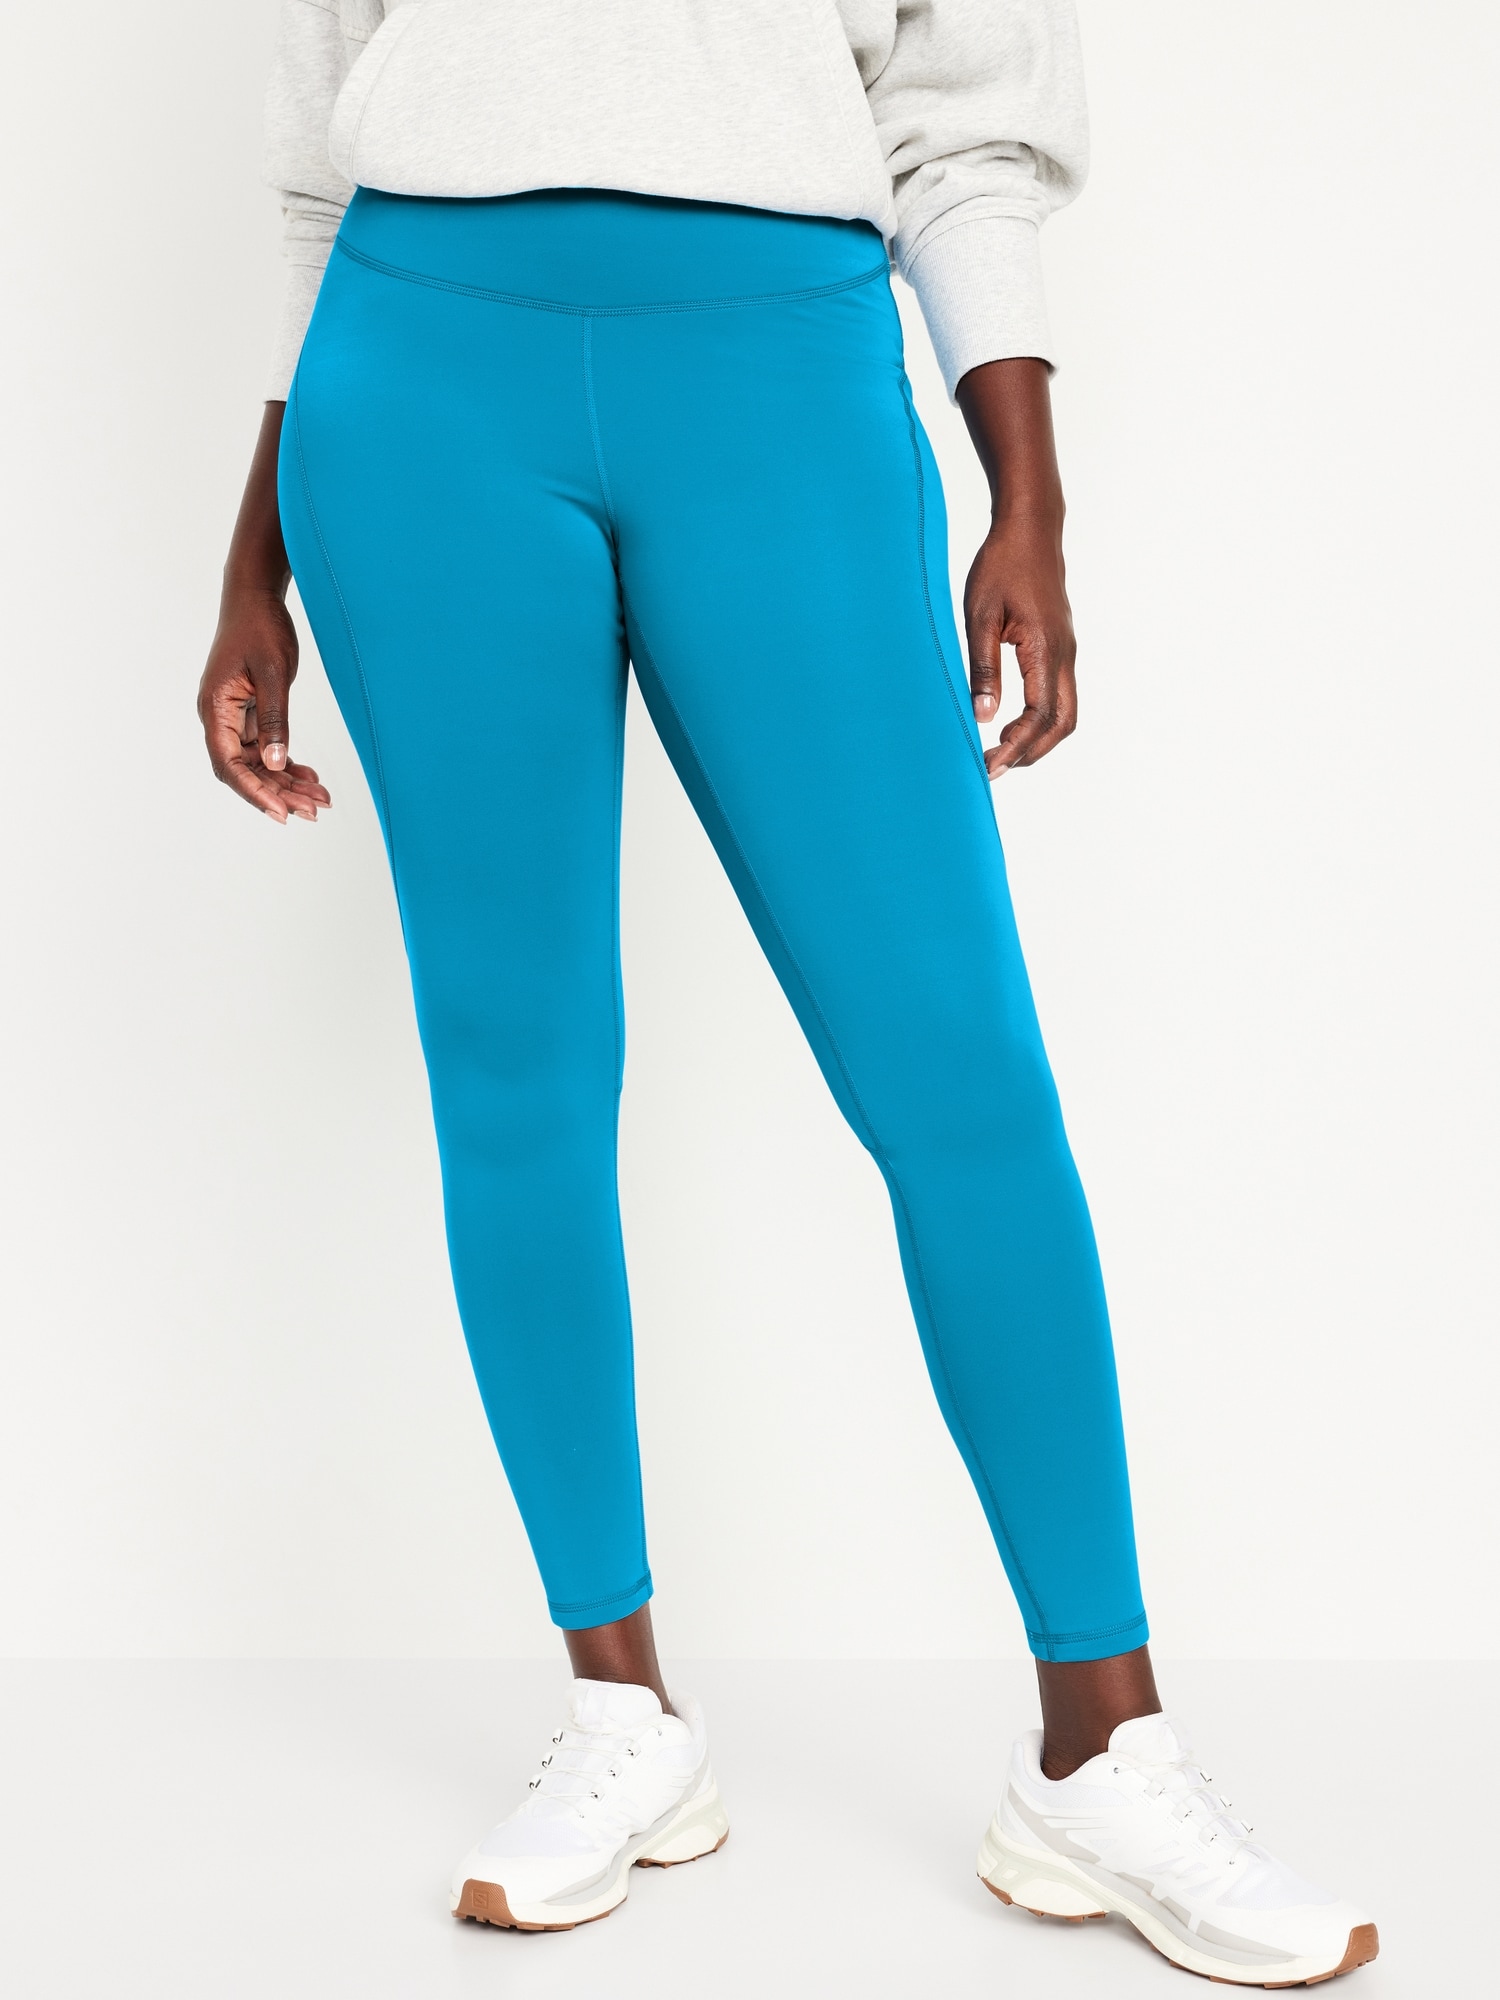 JSGEK Sales Women's High Waist Yoga Pants Classic Vintage Colorful